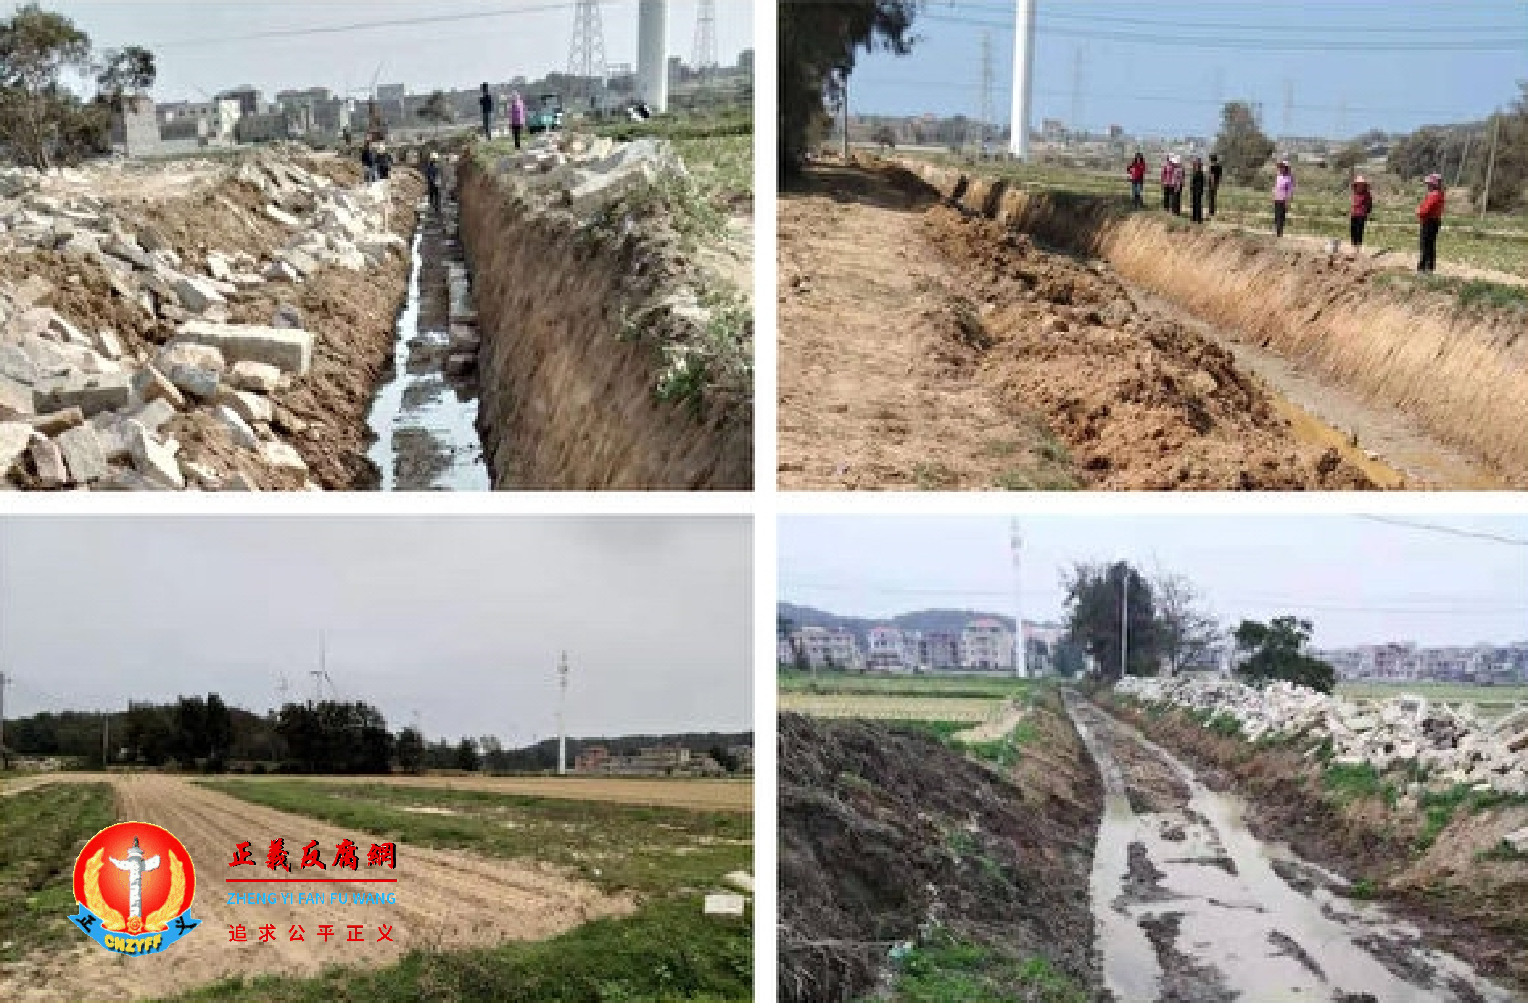 歧楼村土地弃荒近三分之一，当地政府强修高标准农田水渠。.png